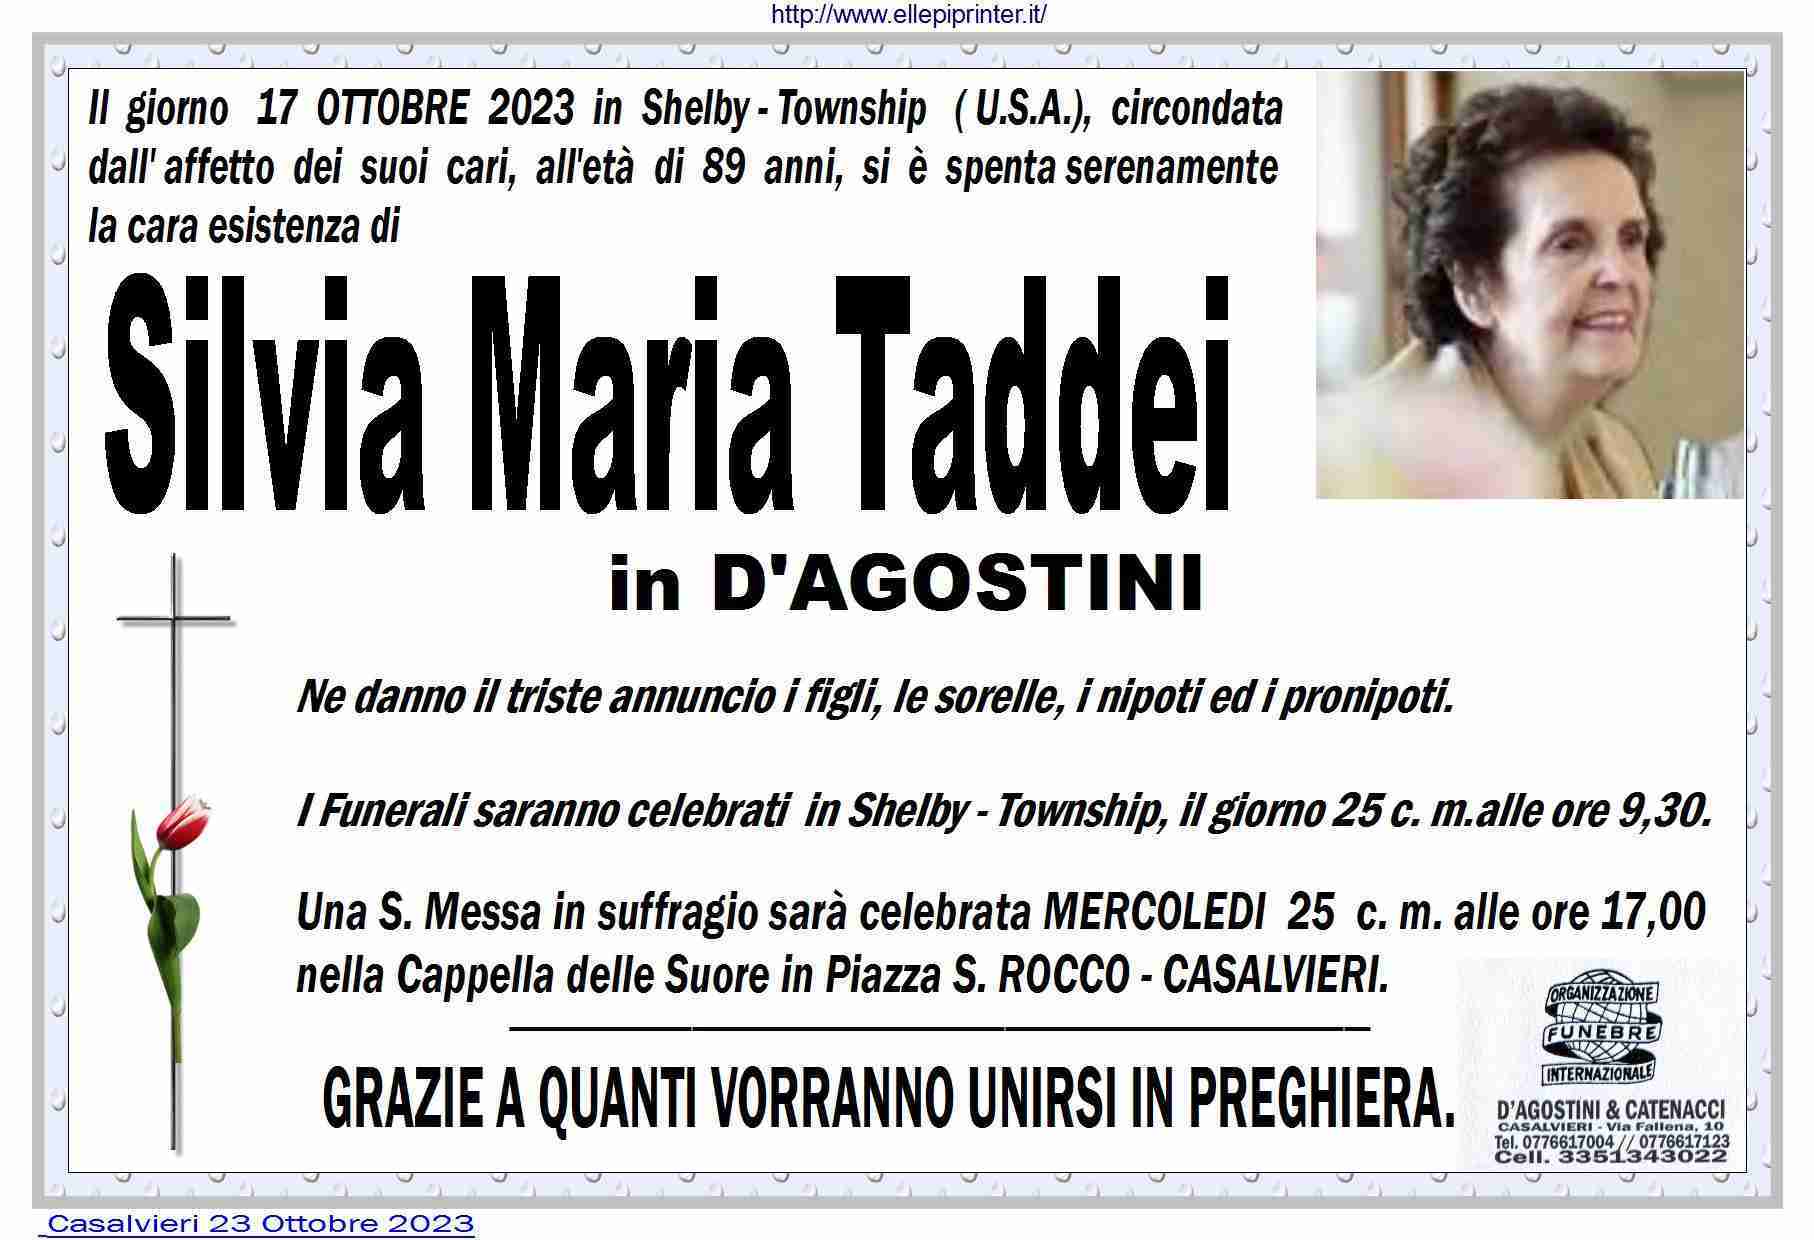 Silvia Maria Taddei